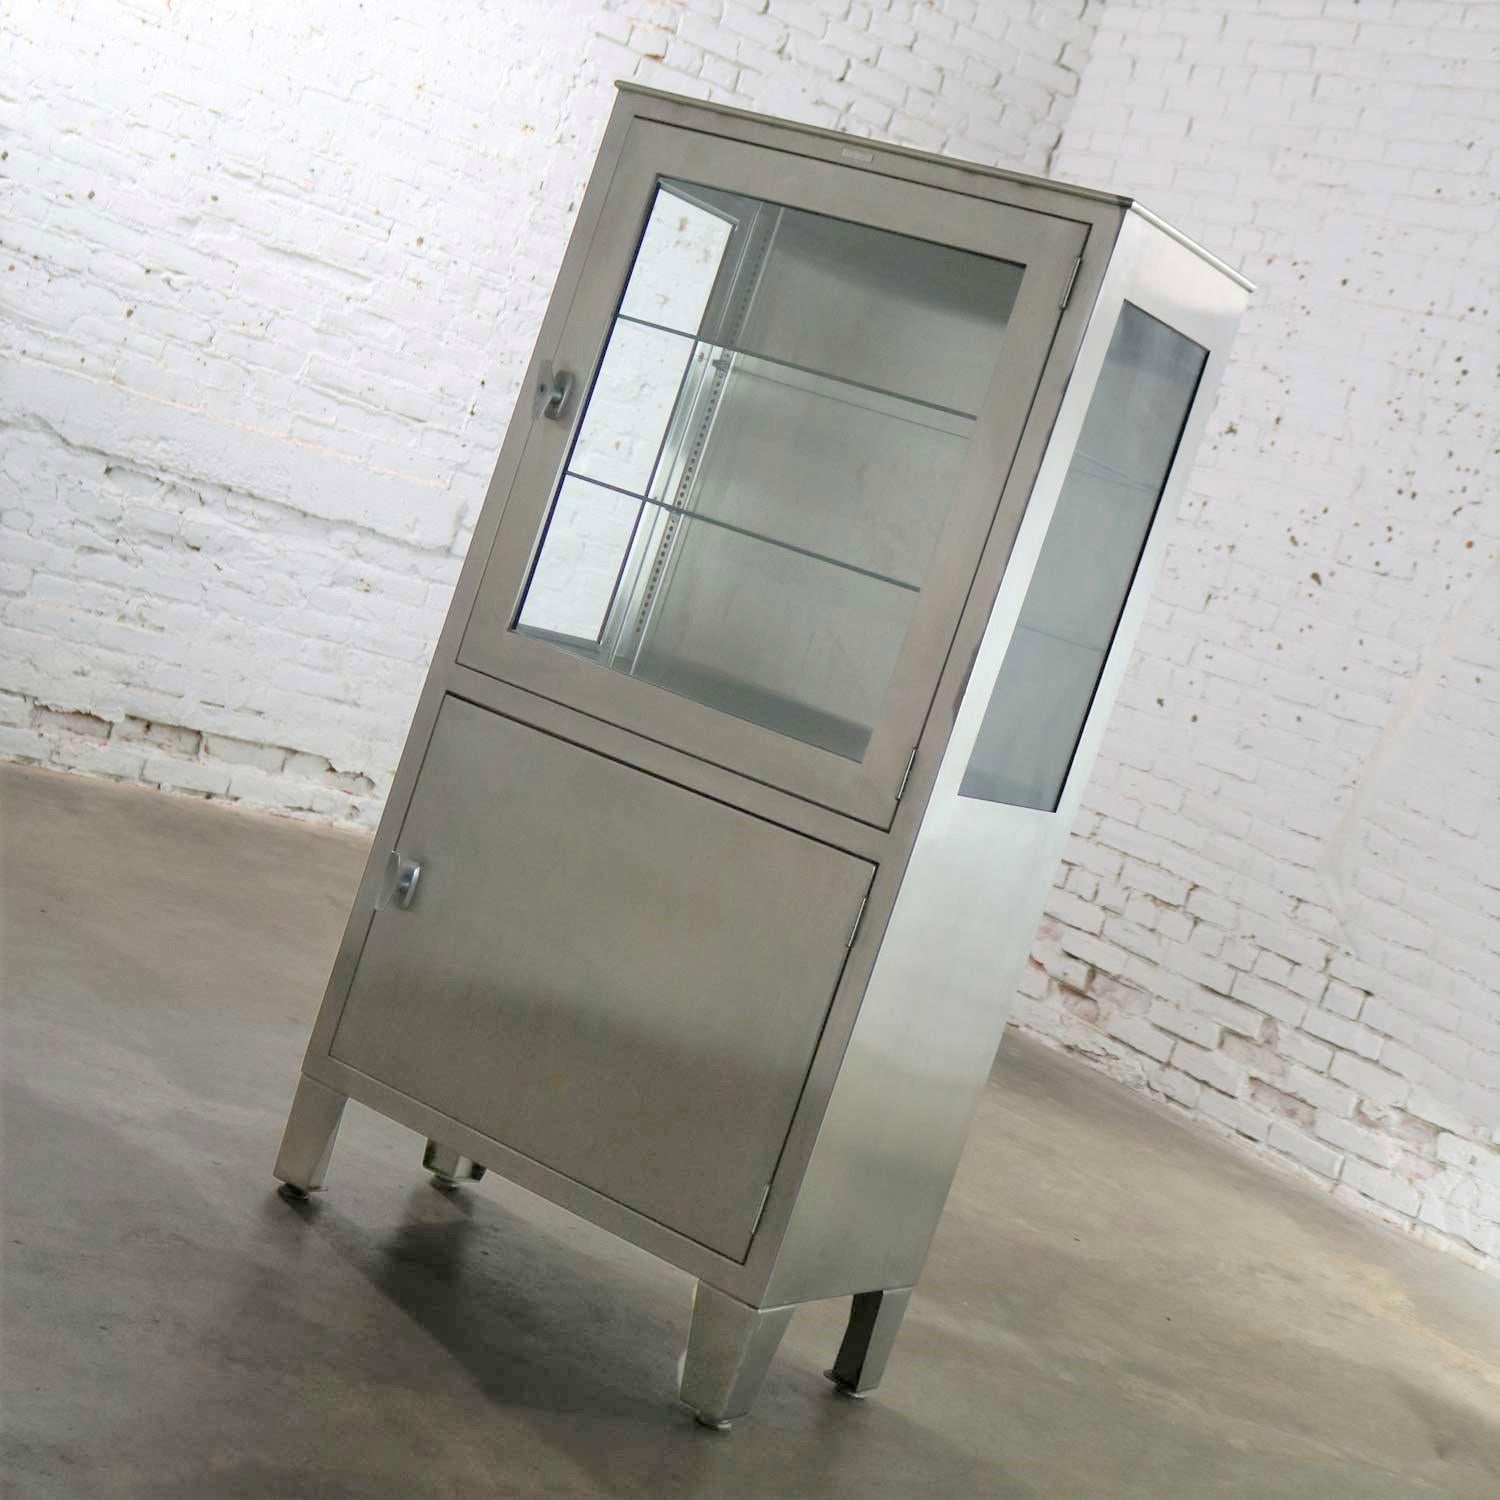 20th Century Vintage Petite Stainless Steel Industrial or Medical Display Storage Cabinet PR